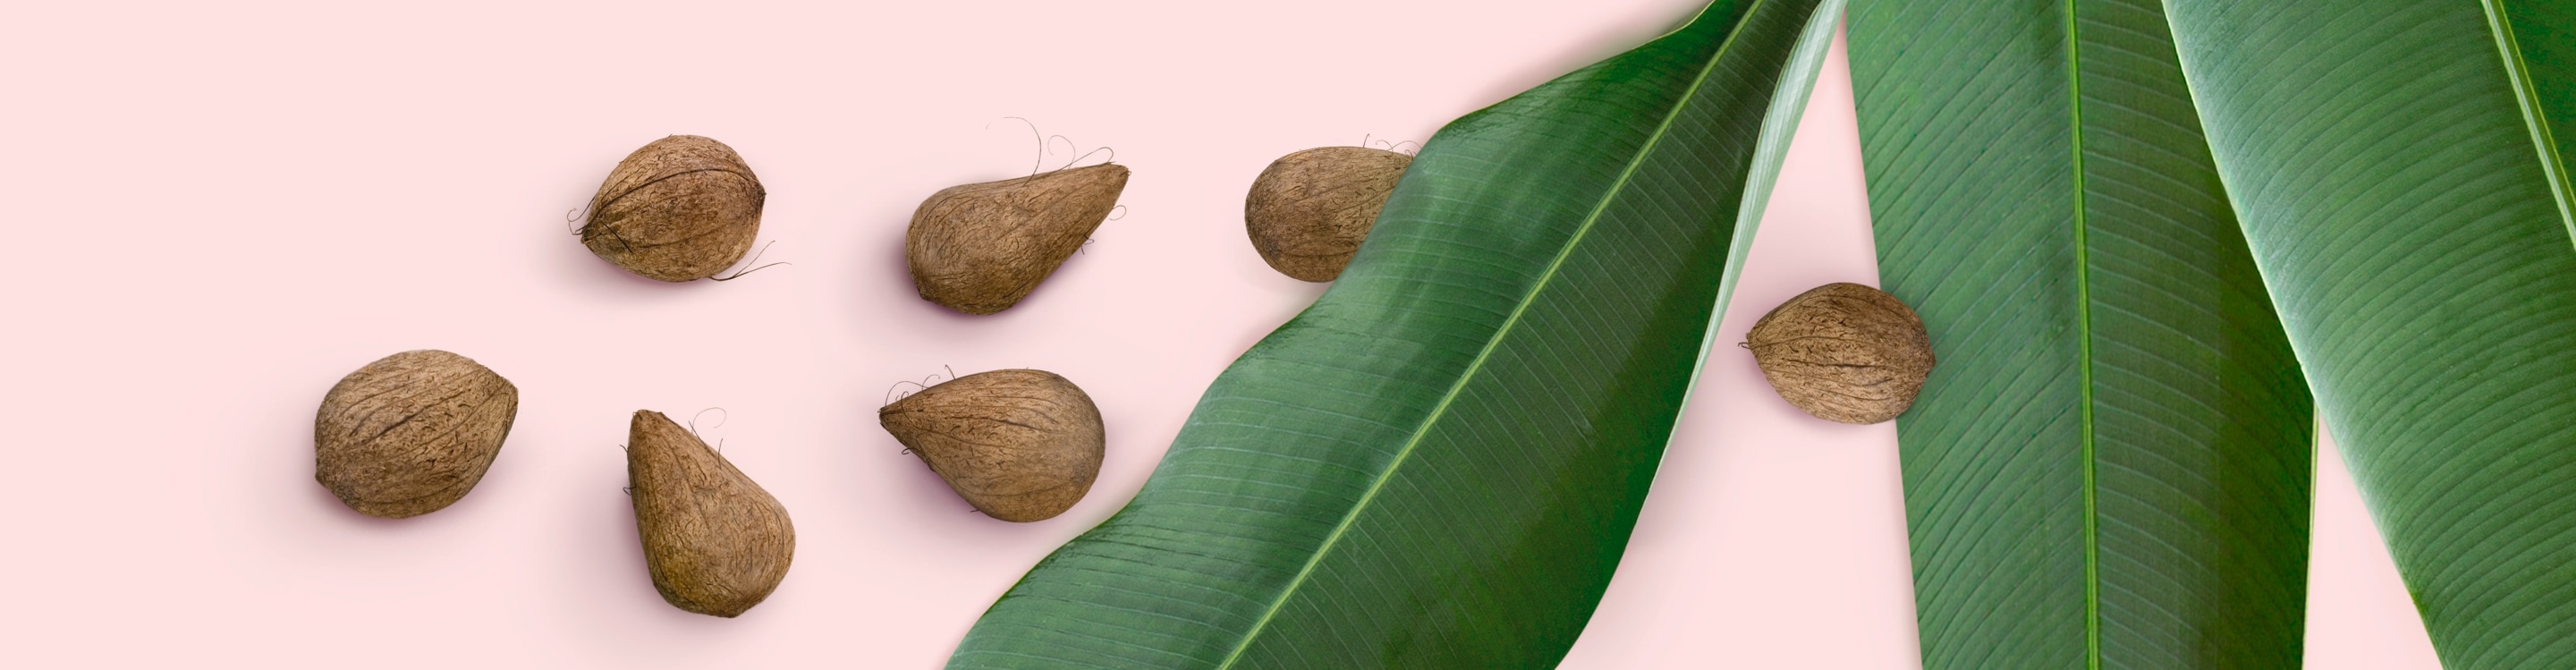 Murumuru nuts and leaves